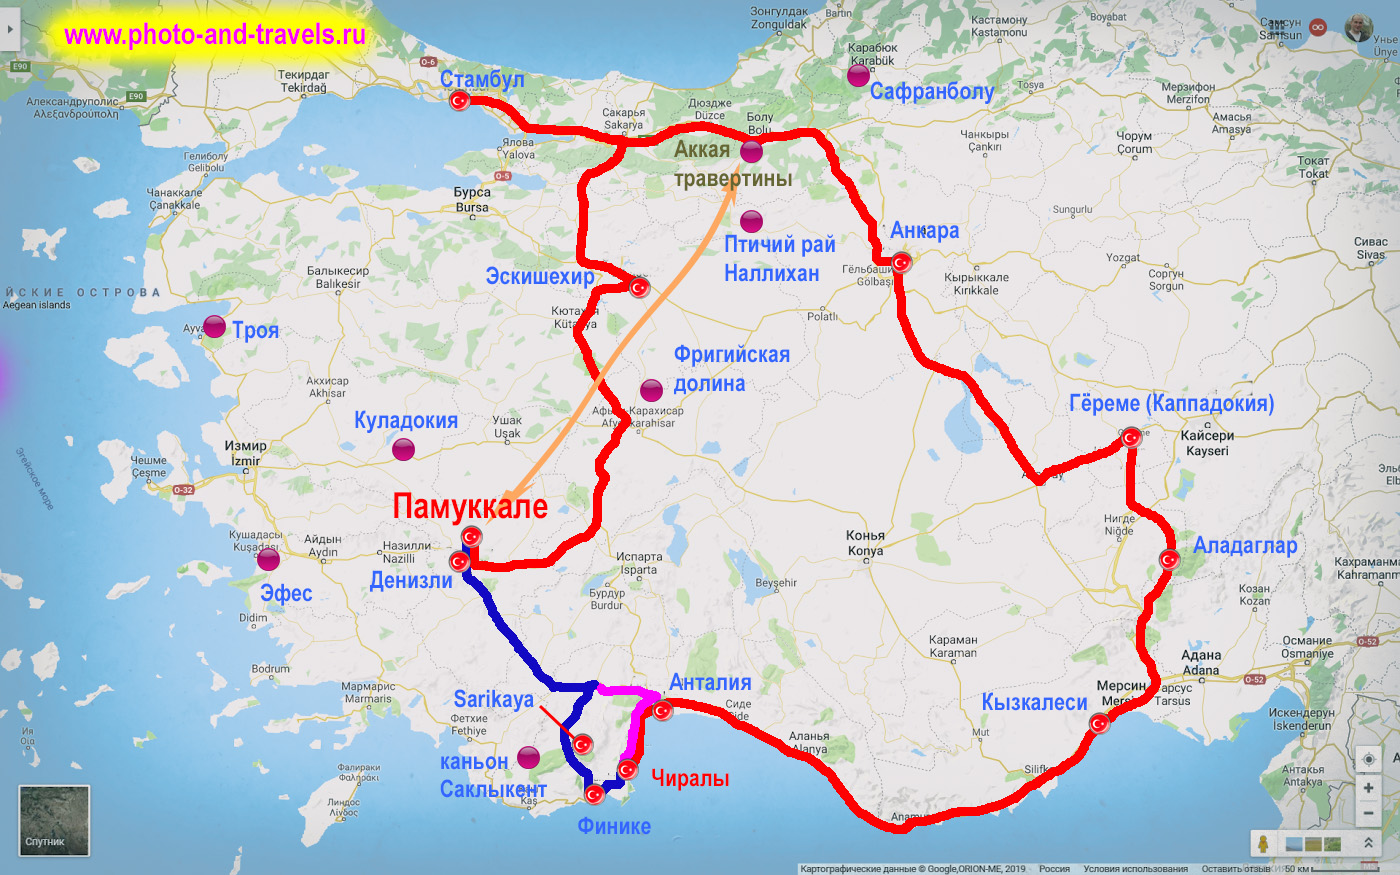 Карта со схемой маршрута, как добраться в Памуккале из Алании, Анталии и Кемера. Также показано, где находятся аналогичные травертины Аккая (Akkaya Travertenleri).